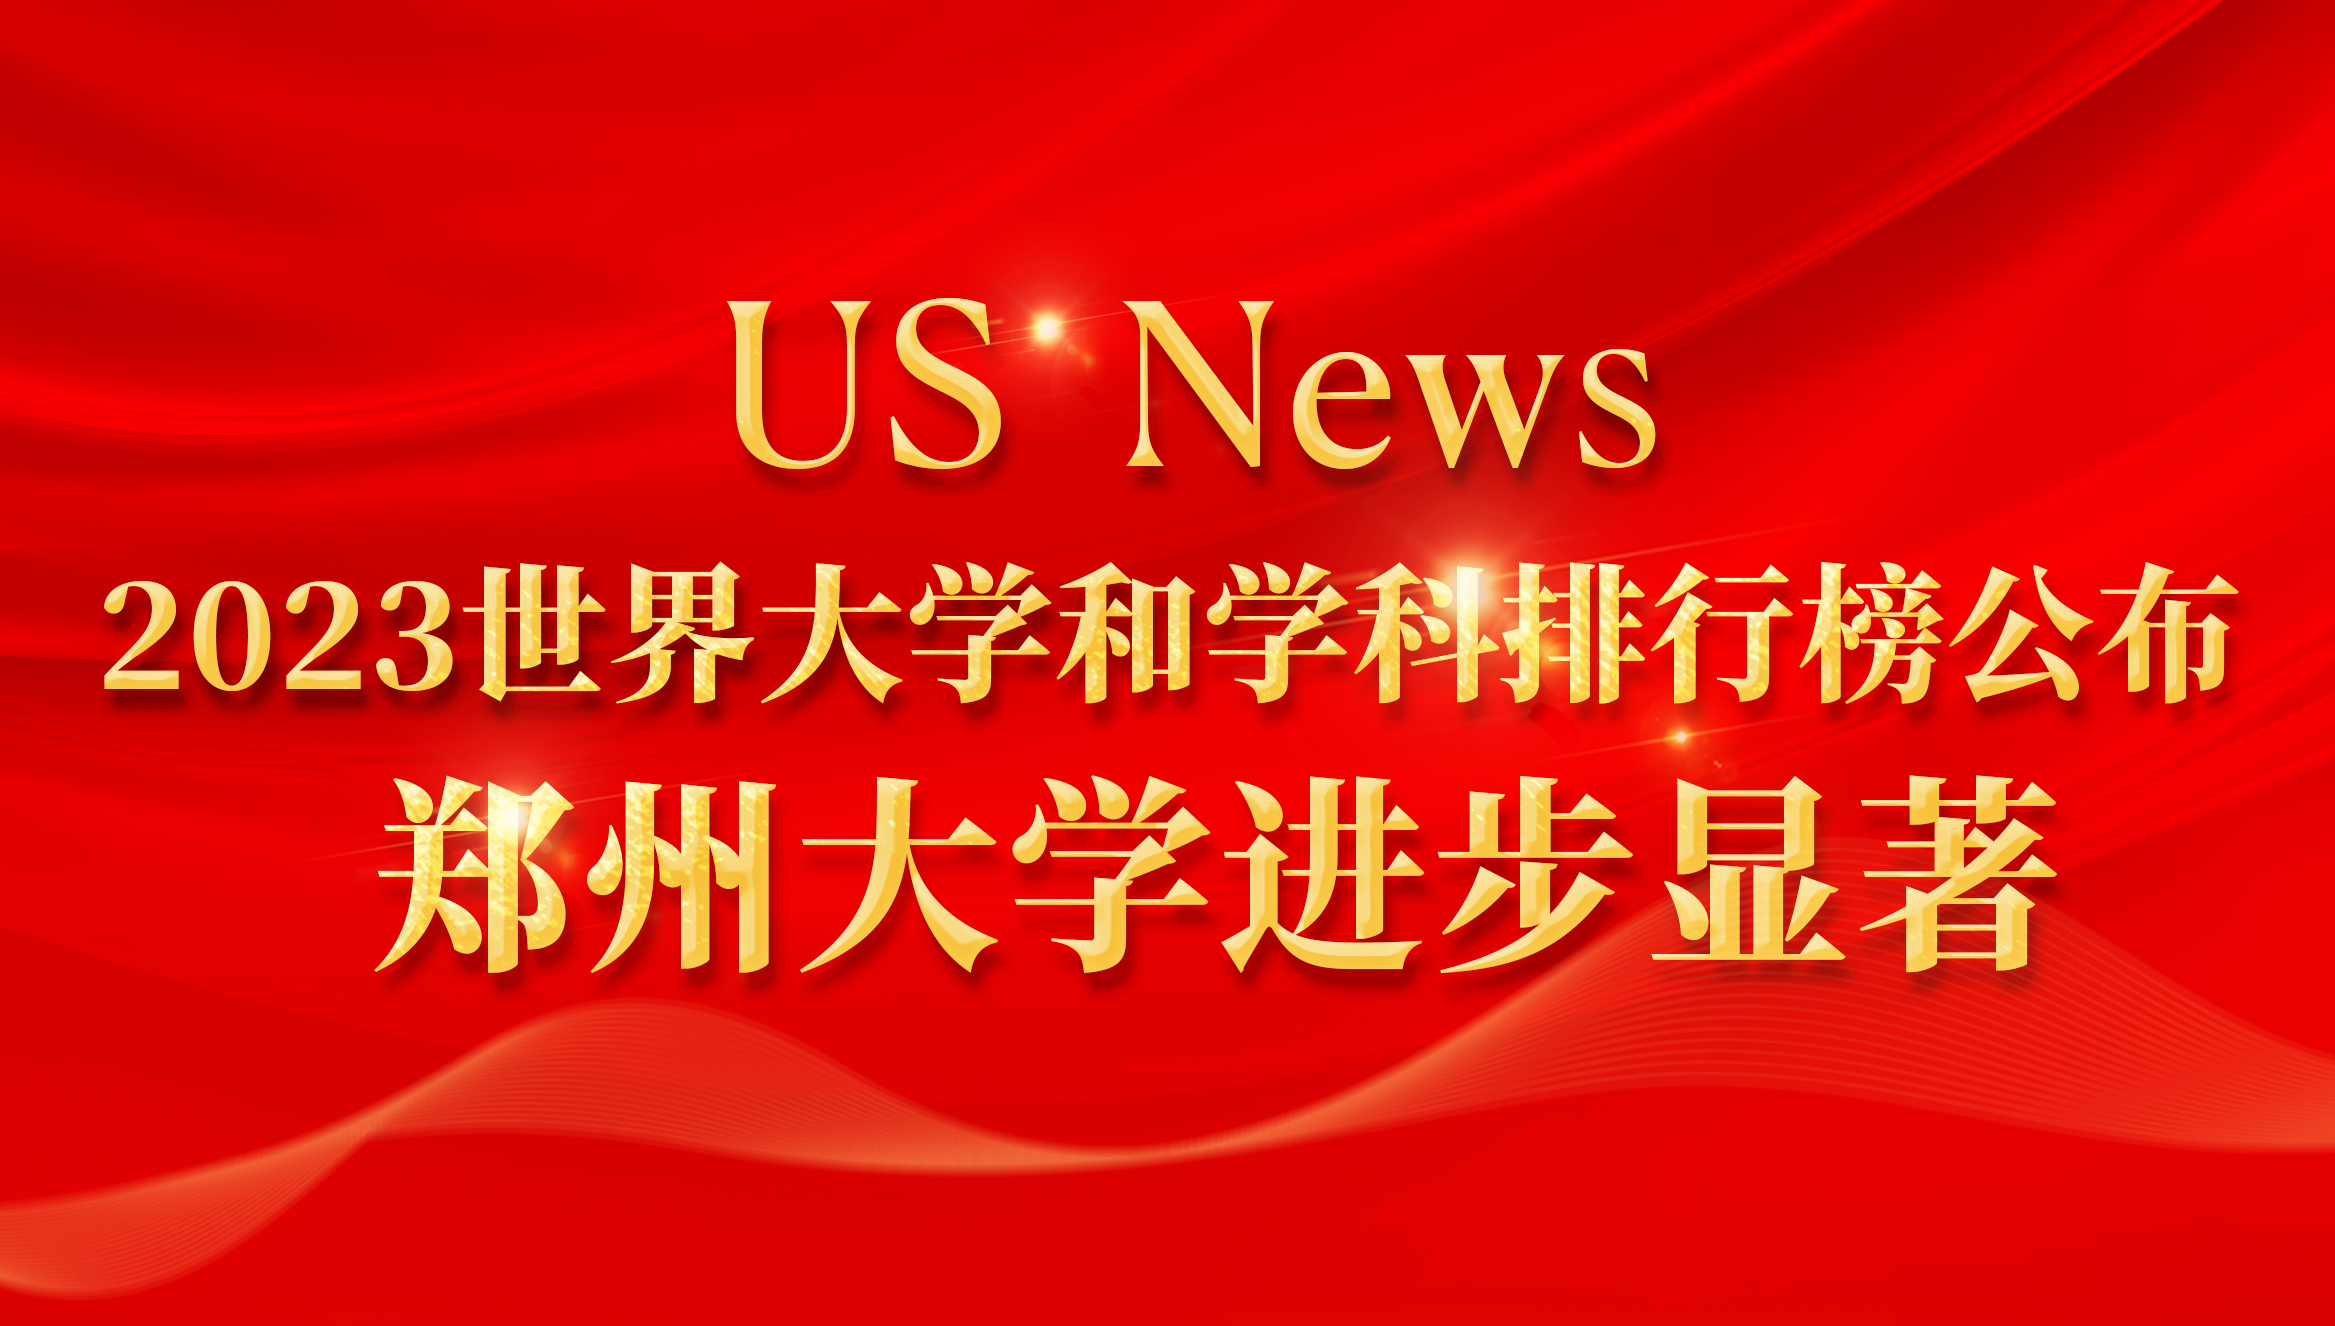 US News 2023世界大学和学科排行榜公布 郑州大学进步显著